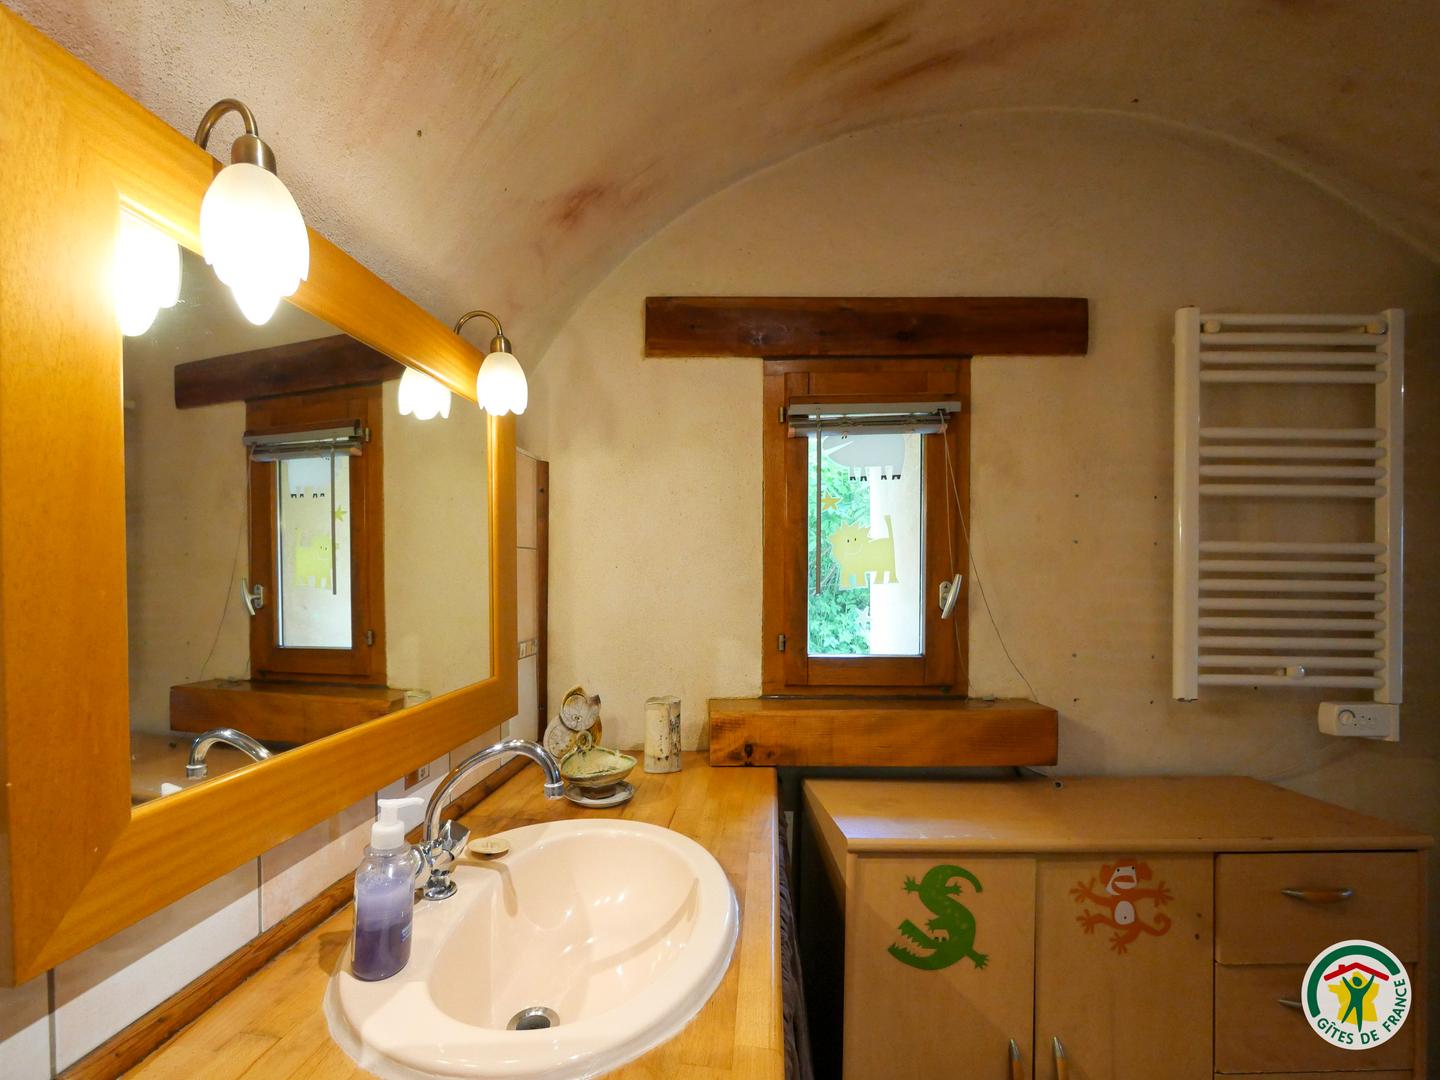 Hôte GreenGo: Gîtes montagnards avec sauna tonneau bois, Gap - Image 24